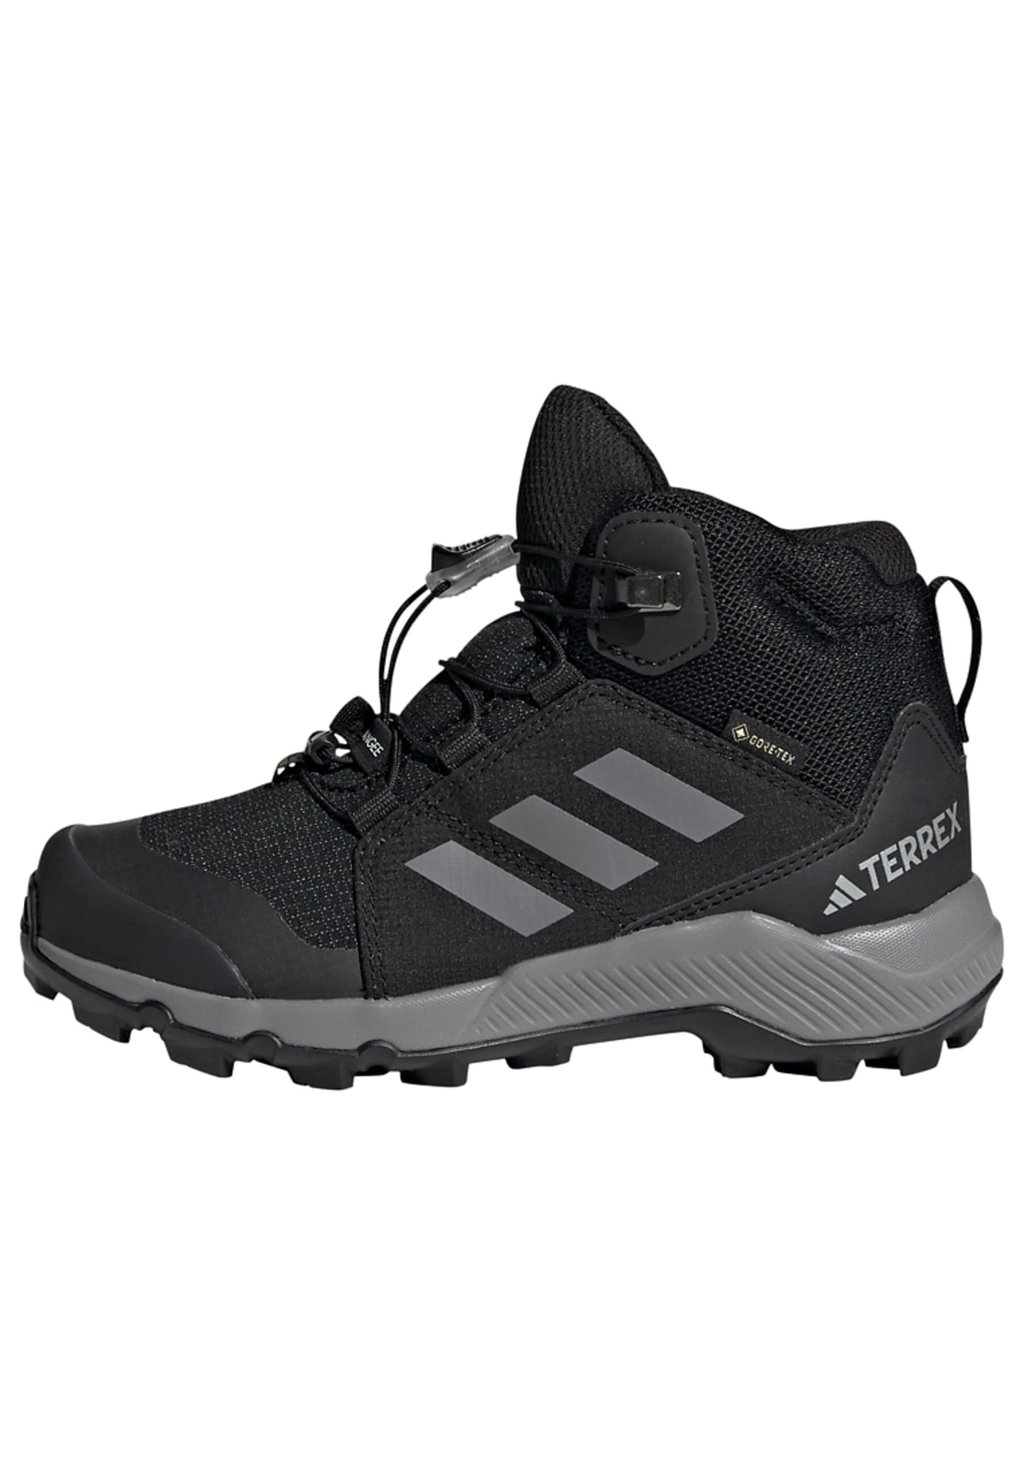 Кроссовки TERREX MID GORE-TEX Adidas Terrex, цвет core black grey three core black цена и фото